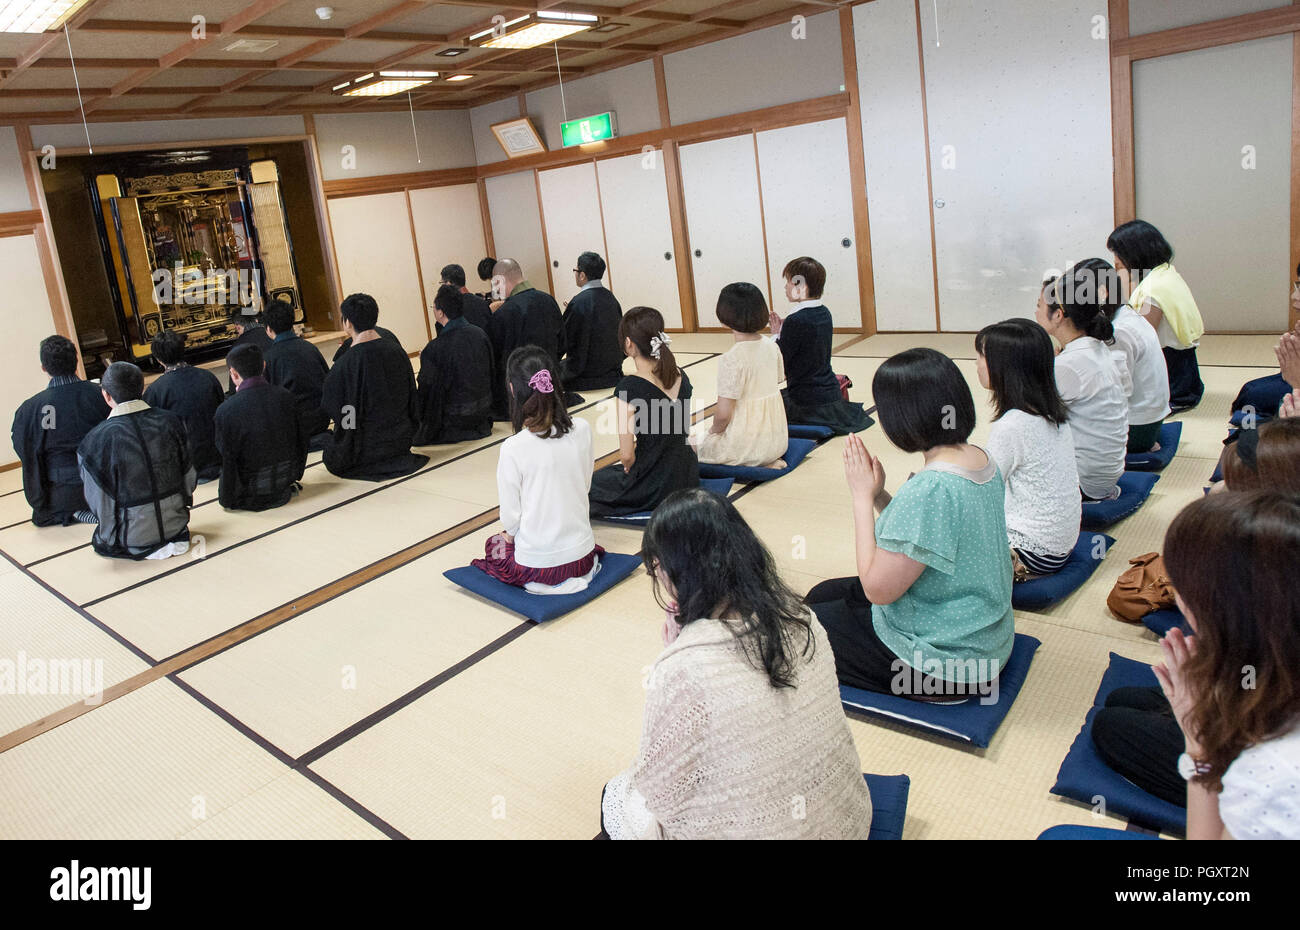 Le monache buddiste prendere parte a un evento mirato a trovare loro partner dal pubblico in generale a SANJO BETSUIN TEMPIO IN SANJO CITTÀ, Prefettura di Niigata, Foto Stock